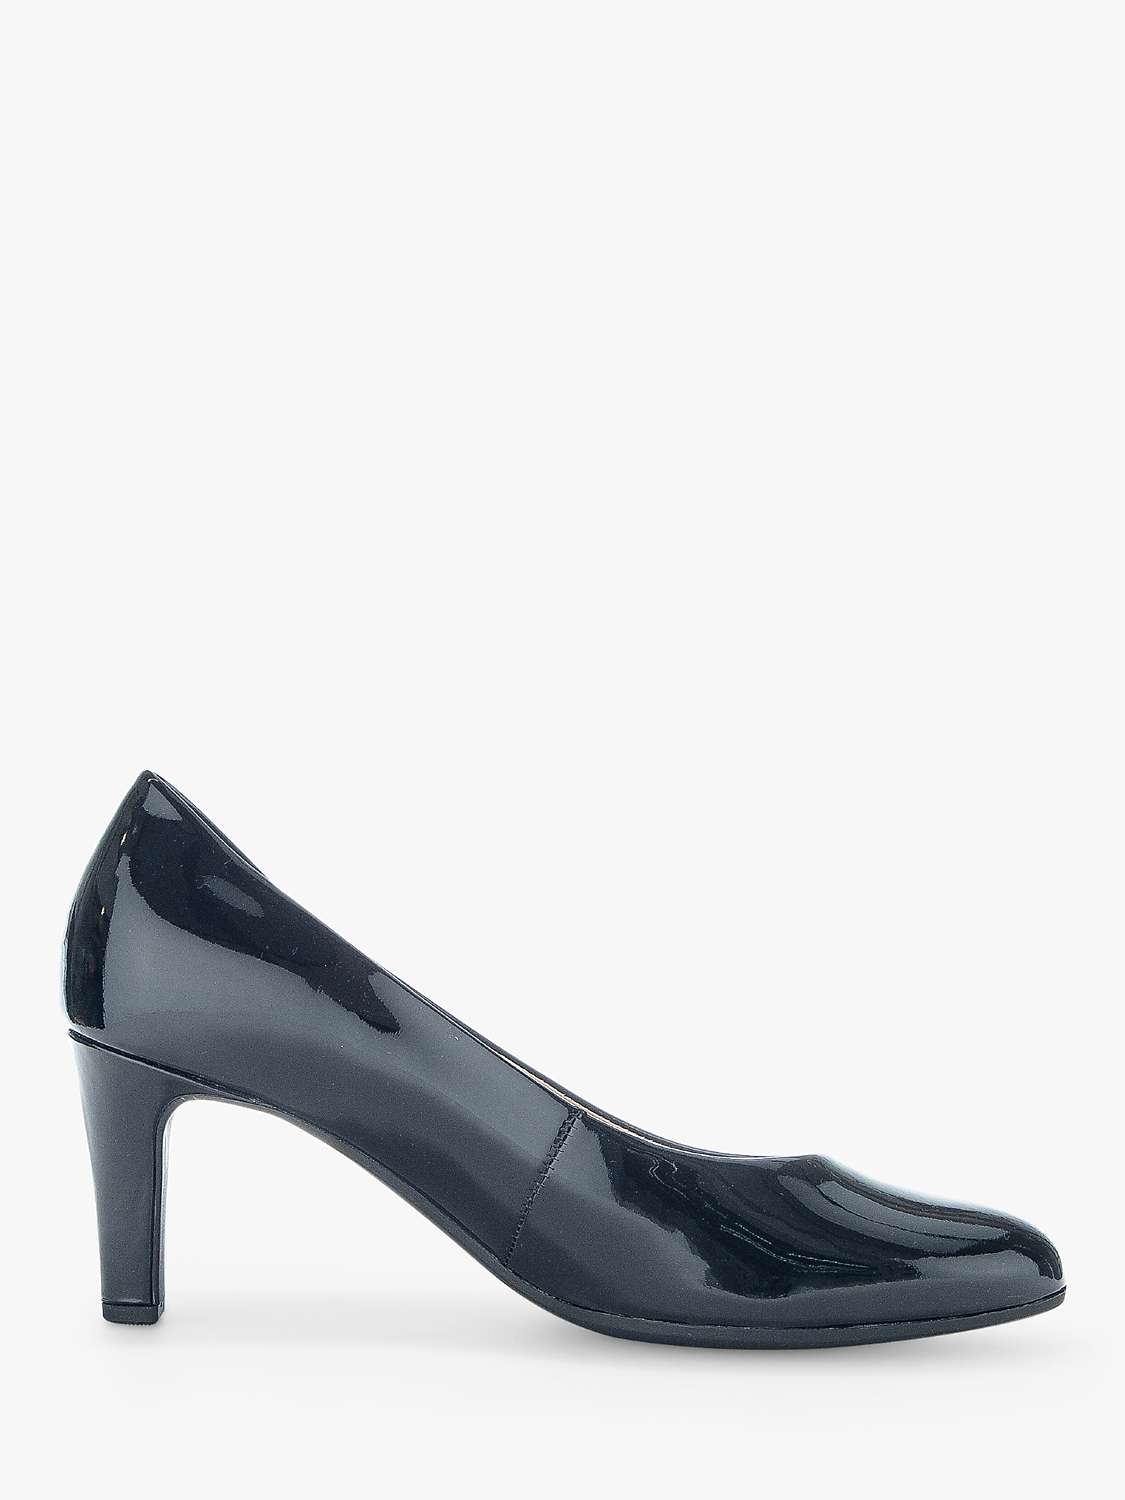 Gabor Edina Heeled Leather Court Shoes, Black Nappalack at John Lewis ...